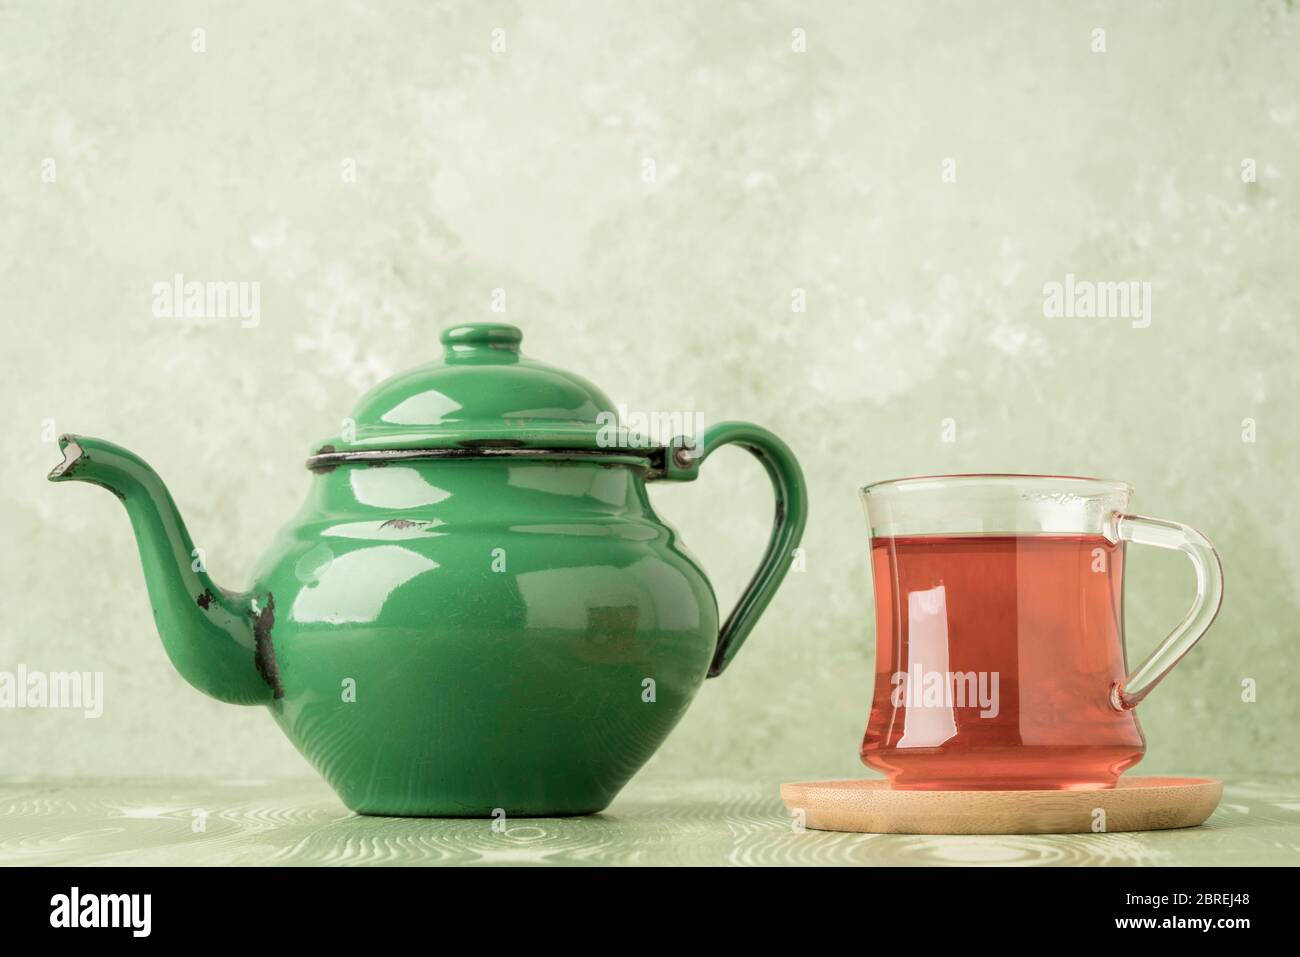 Green enamel tea kettle